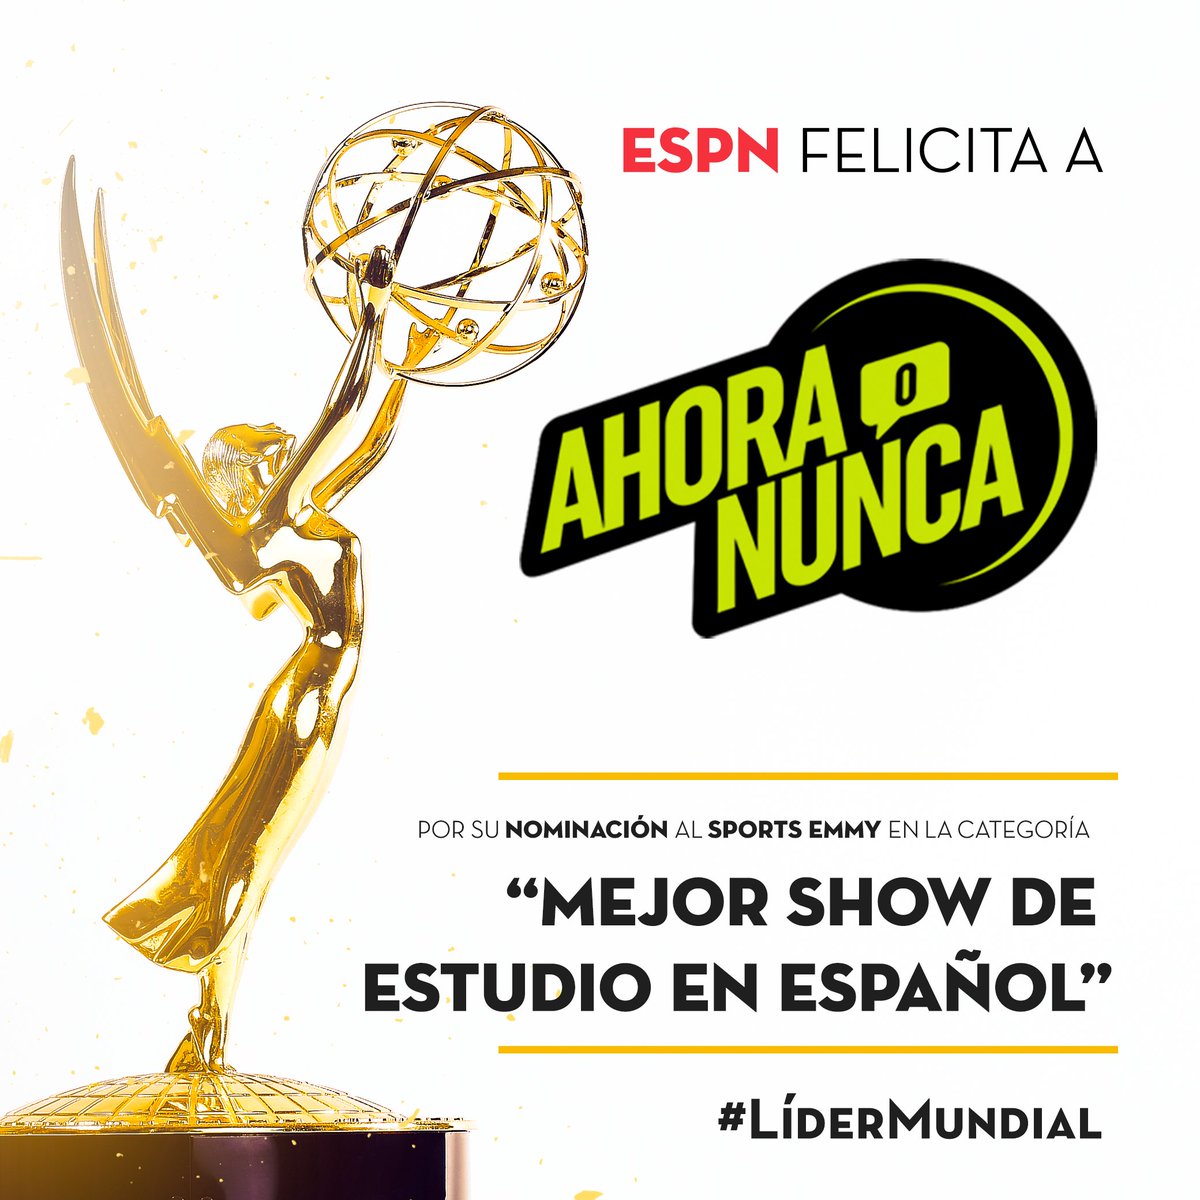 🙌 ¡TENEMOS UNA BUENA NOTICIA! 
  
Estamos nominados como mejor show de estudio en español.

Queremos felicitar y agradecer a todos los que trabajan día a día para hacer realidad Ahora o Nunca.

#SportsEmmys